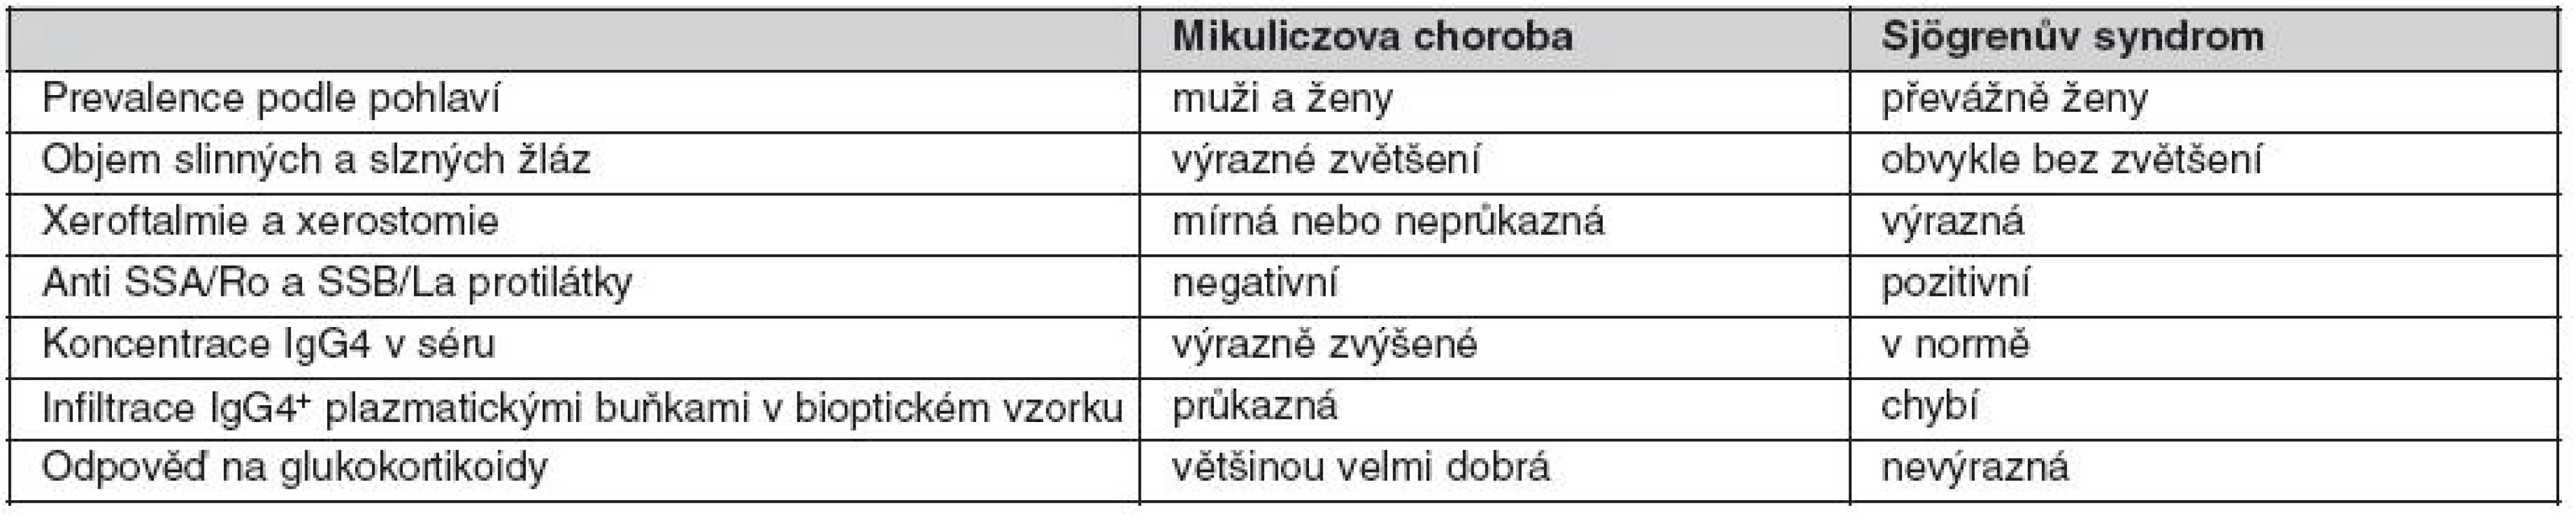 Hlavní rozdíly mezi Mikuliczovou chorobou a Sjögrenovým syndromem